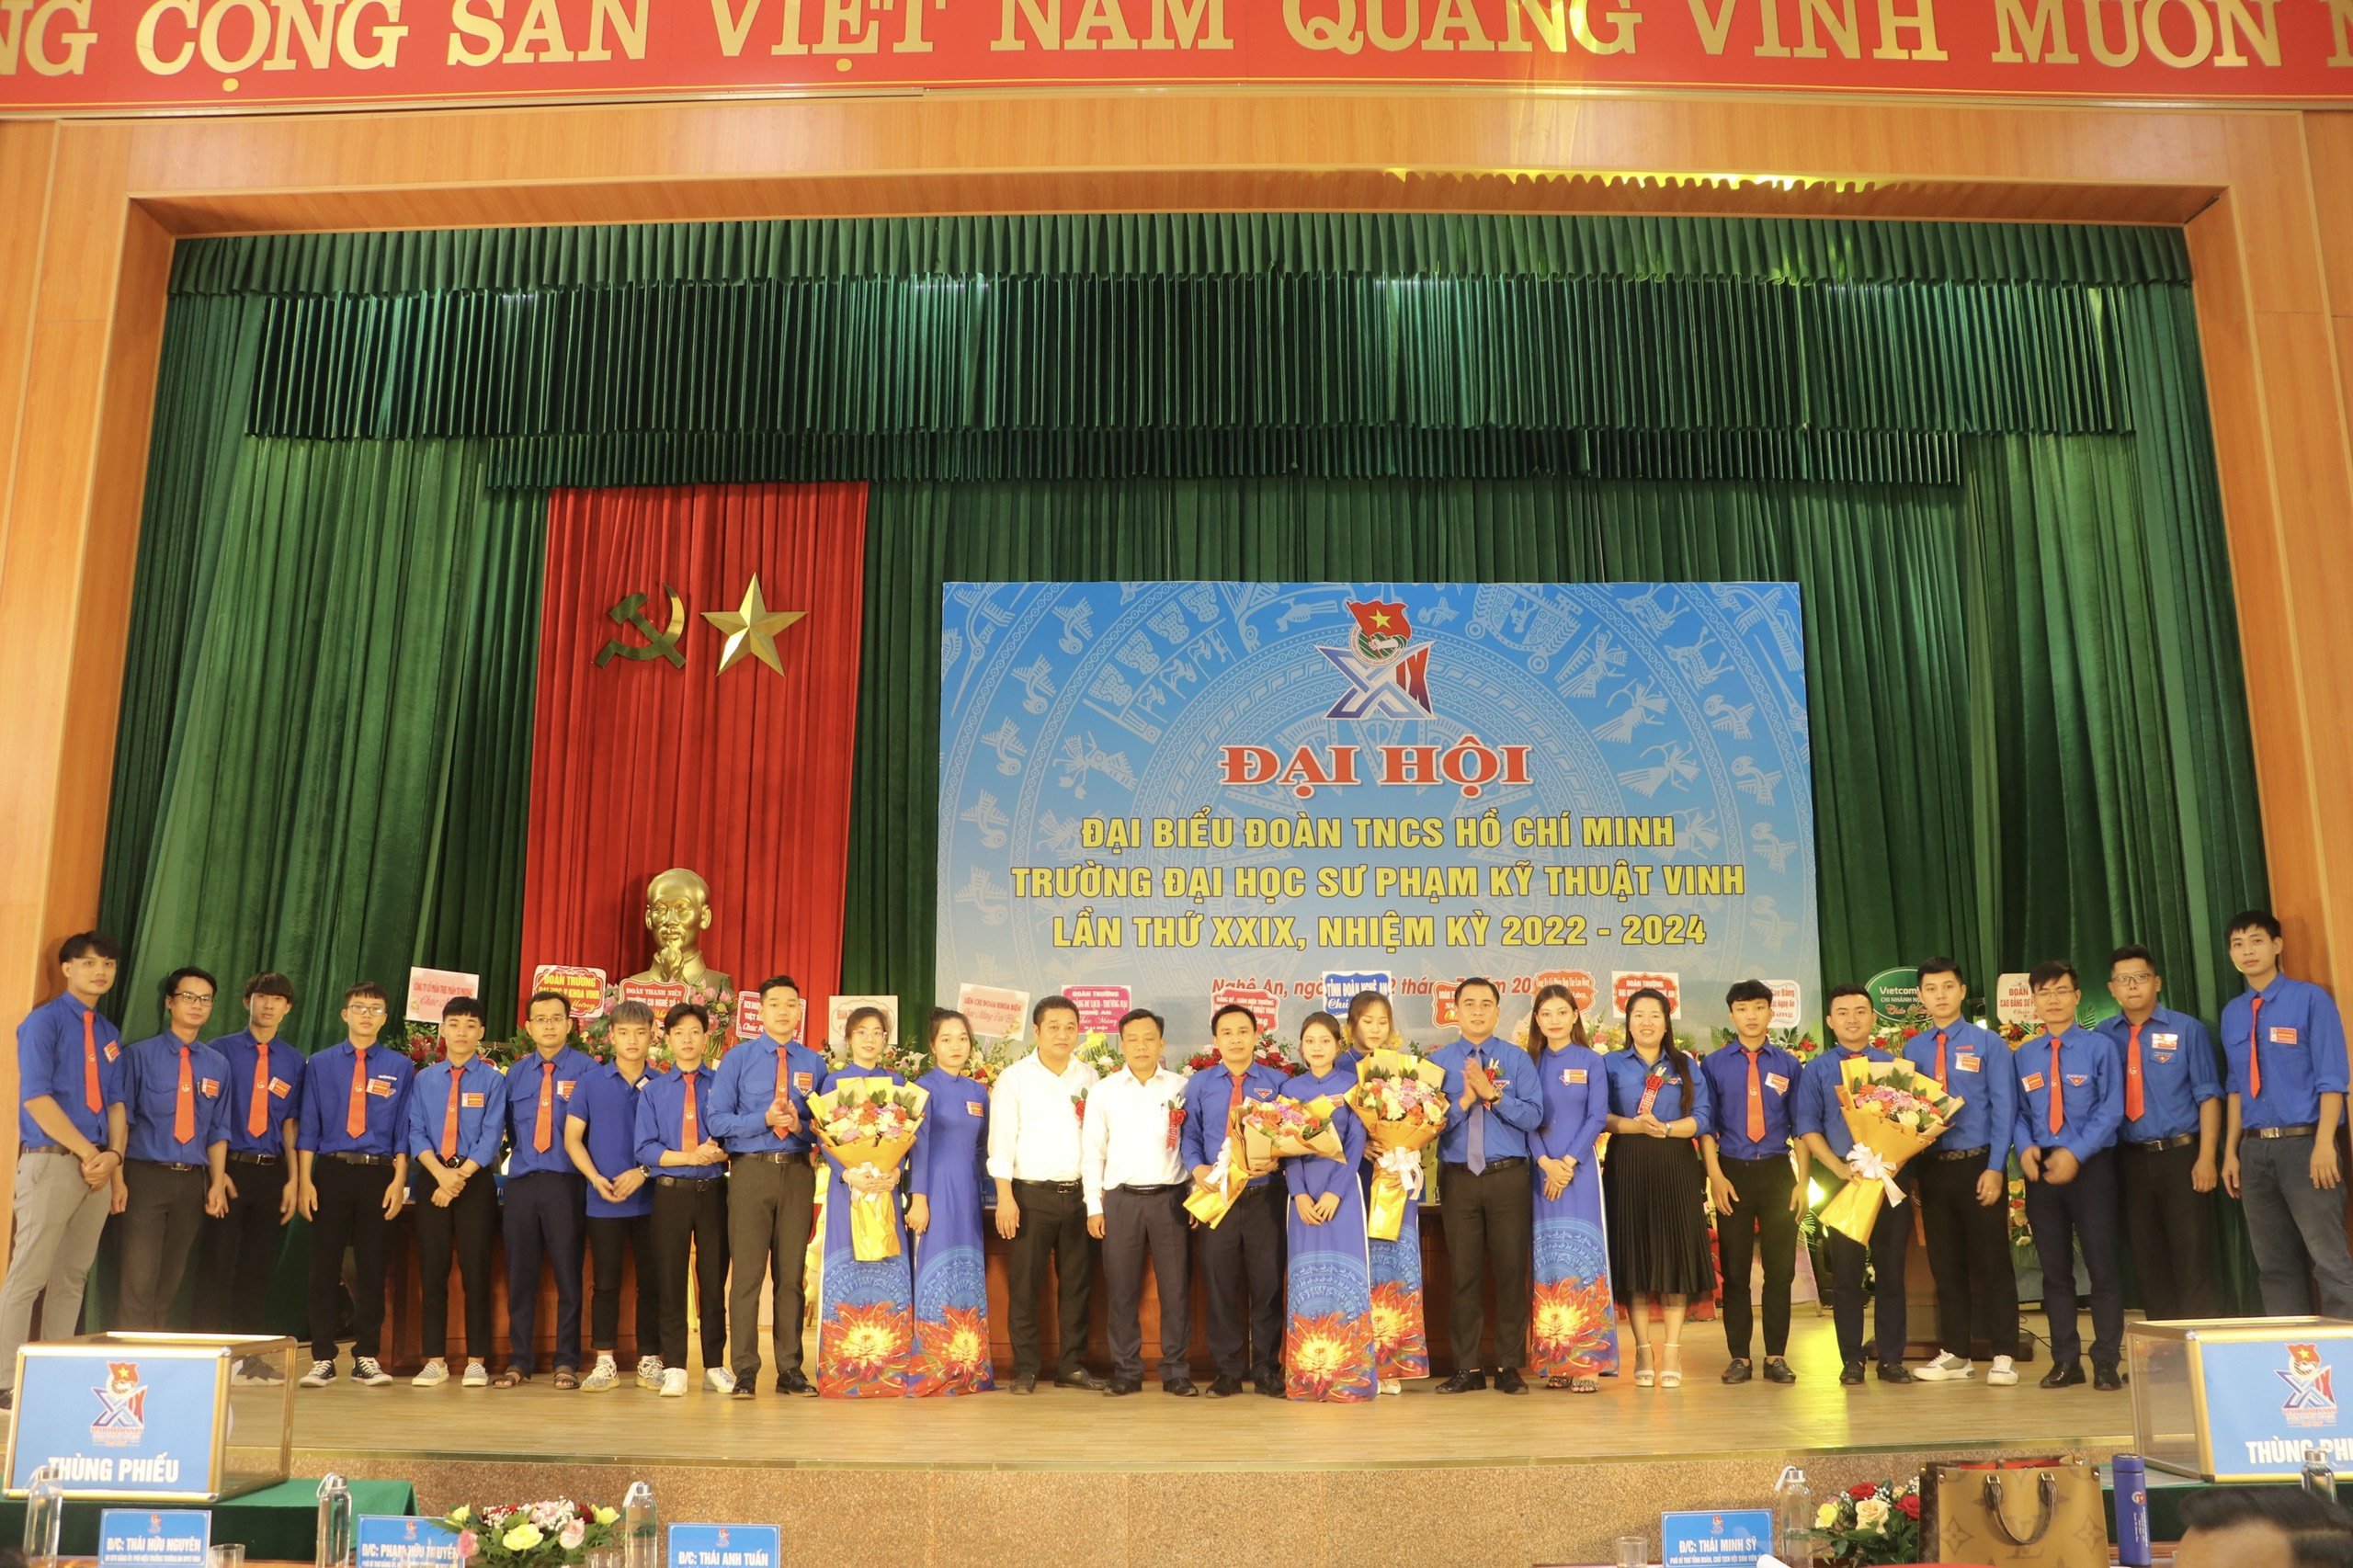 Đại hội đại biểu Đoàn TNCS Hồ Chí Minh Trường Đại học Sư phạm Kỹ thuật Vinh lần thứ XXIX, nhiệm kỳ 2022-2024.